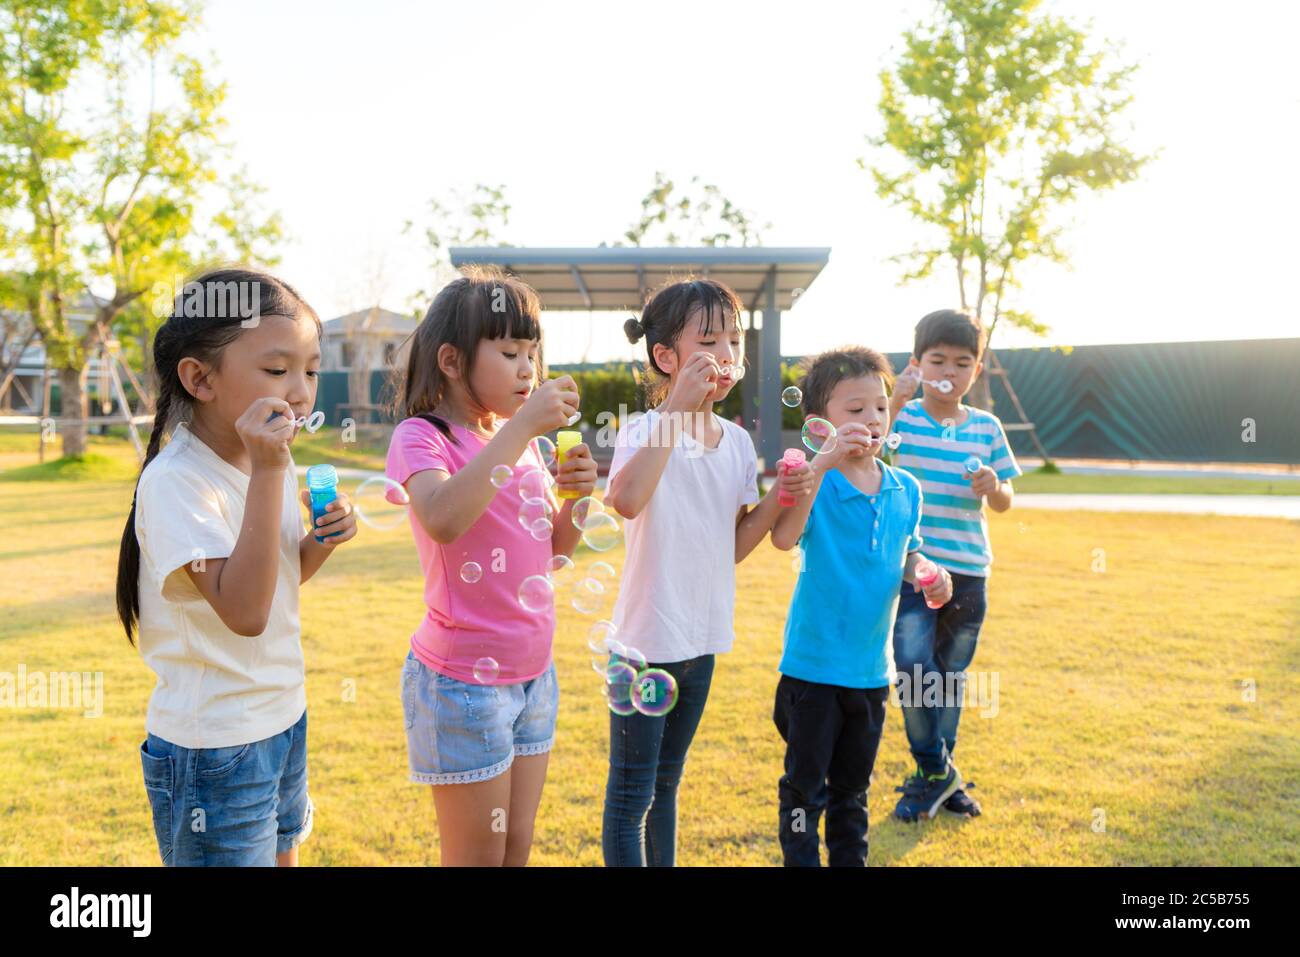 Un grand groupe d'heureux amis asiatiques souriants de maternelle gamins jouant des bulles de souffle ensemble dans le parc sur l'herbe verte le jour ensoleillé d'été. Banque D'Images